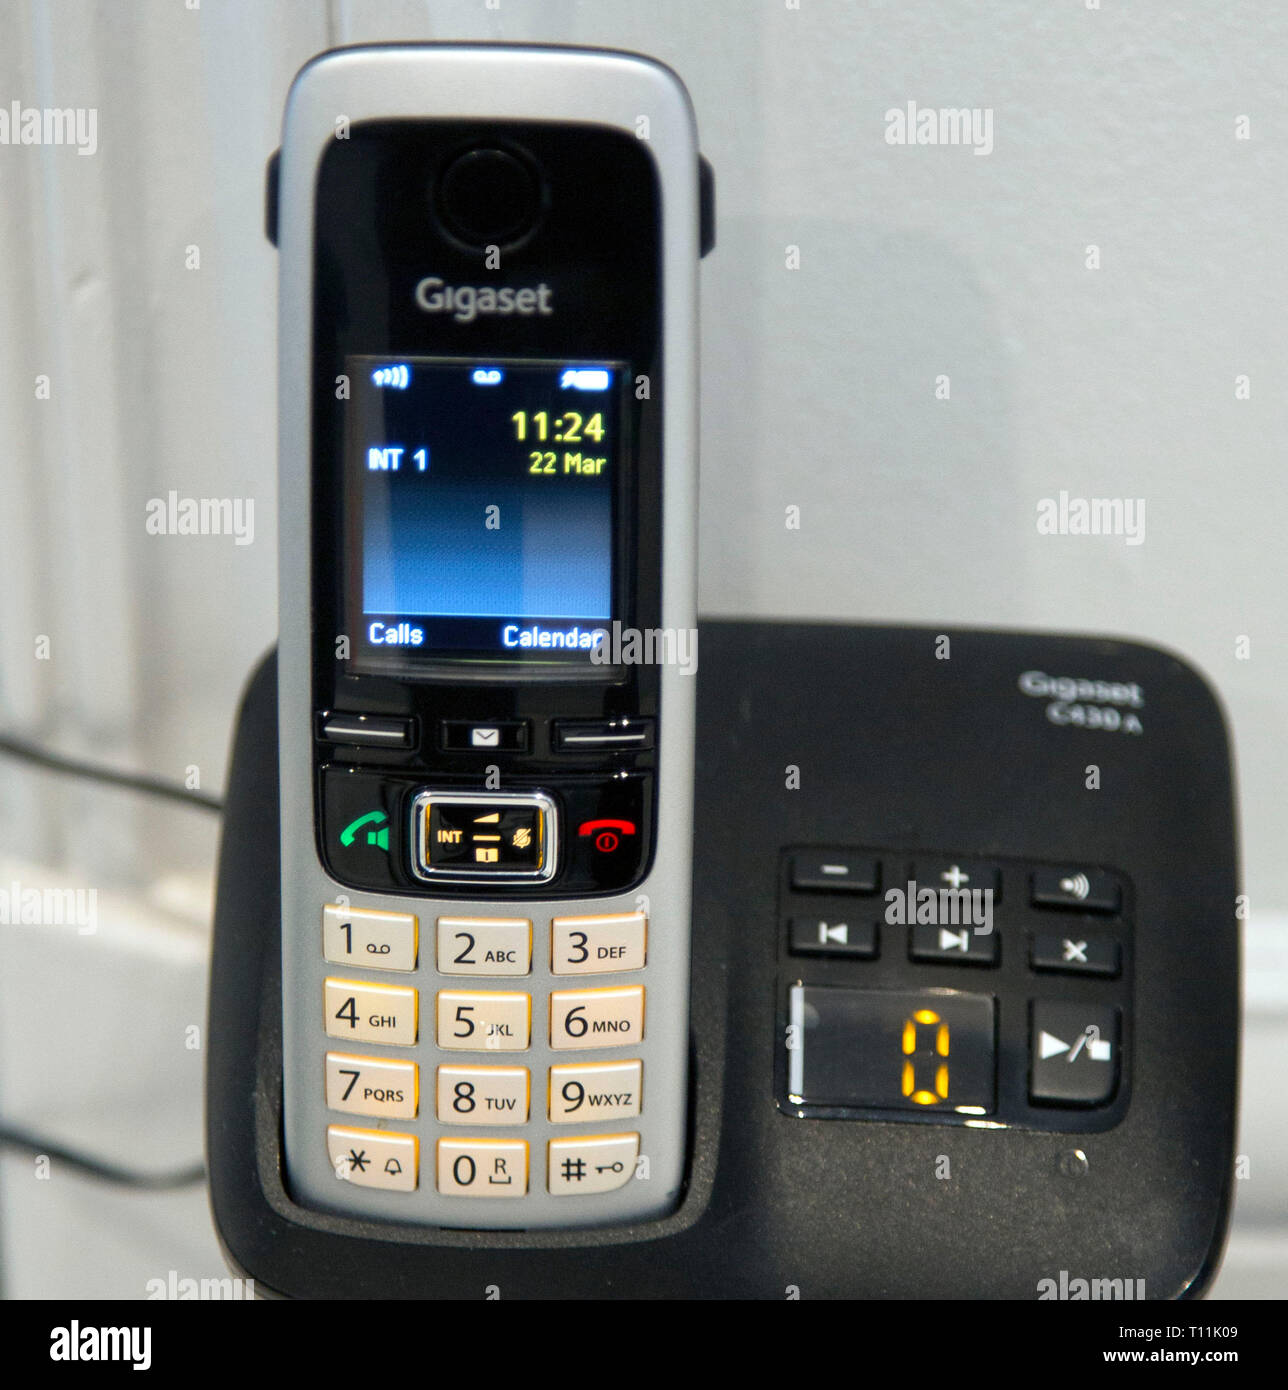 Gigaset téléphone fixe sans fil de la marque d'un téléphone avec répondeur,  Londres Photo Stock - Alamy